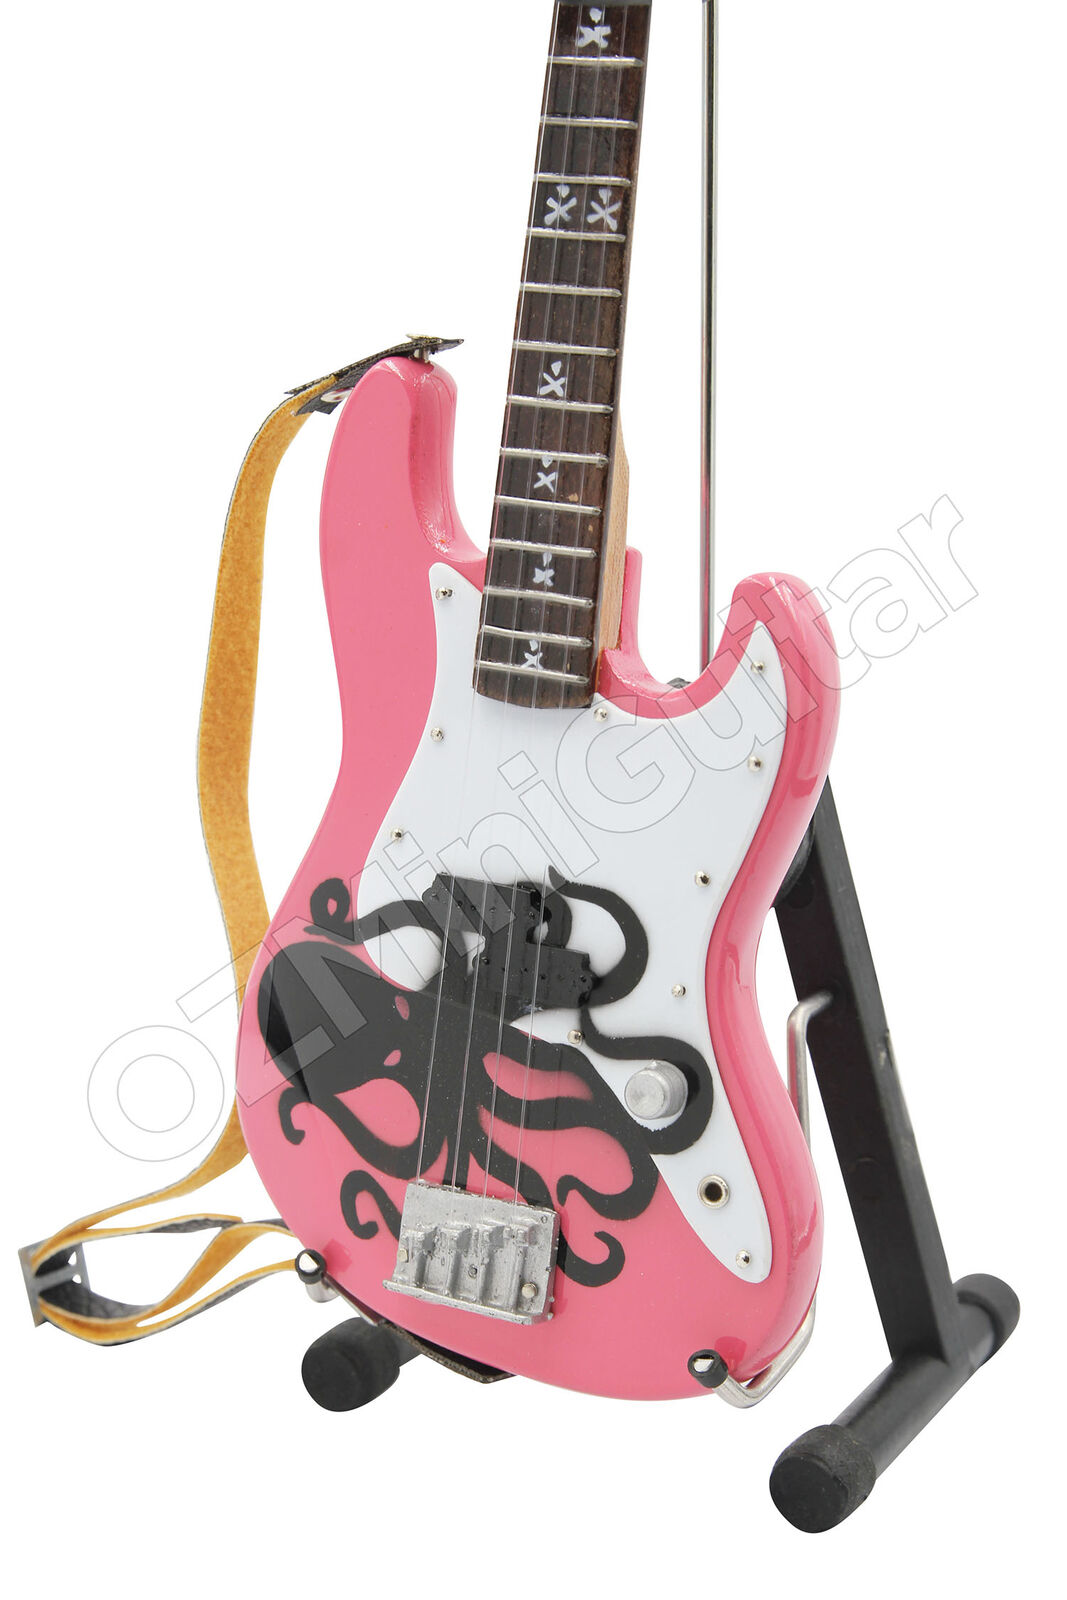 Miniature Bass Guitar Mark Hoppus Blink-182 Pink Octopus & Strap